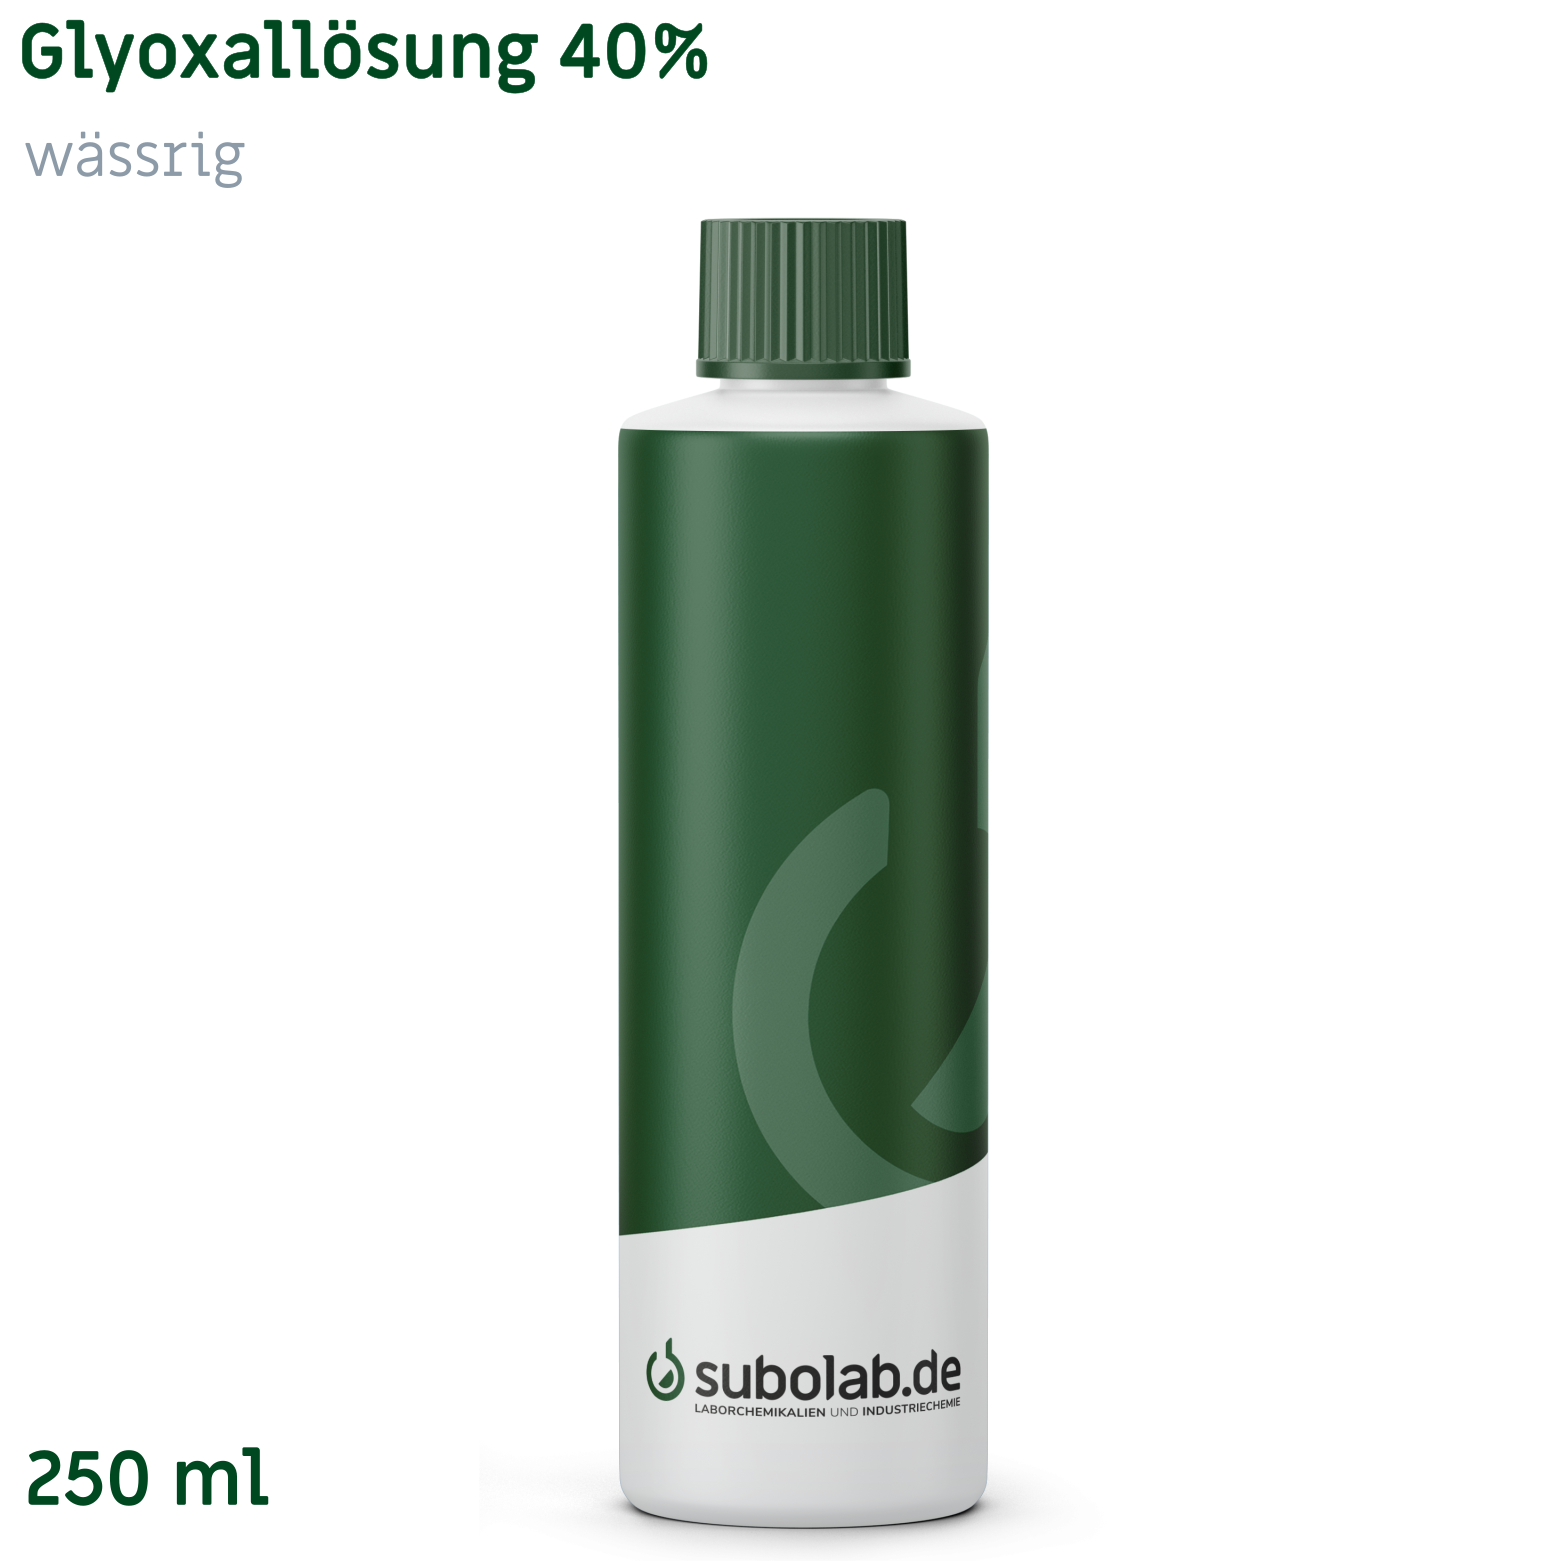 Bild von Glyoxallösung 40% wässrig (250 ml)